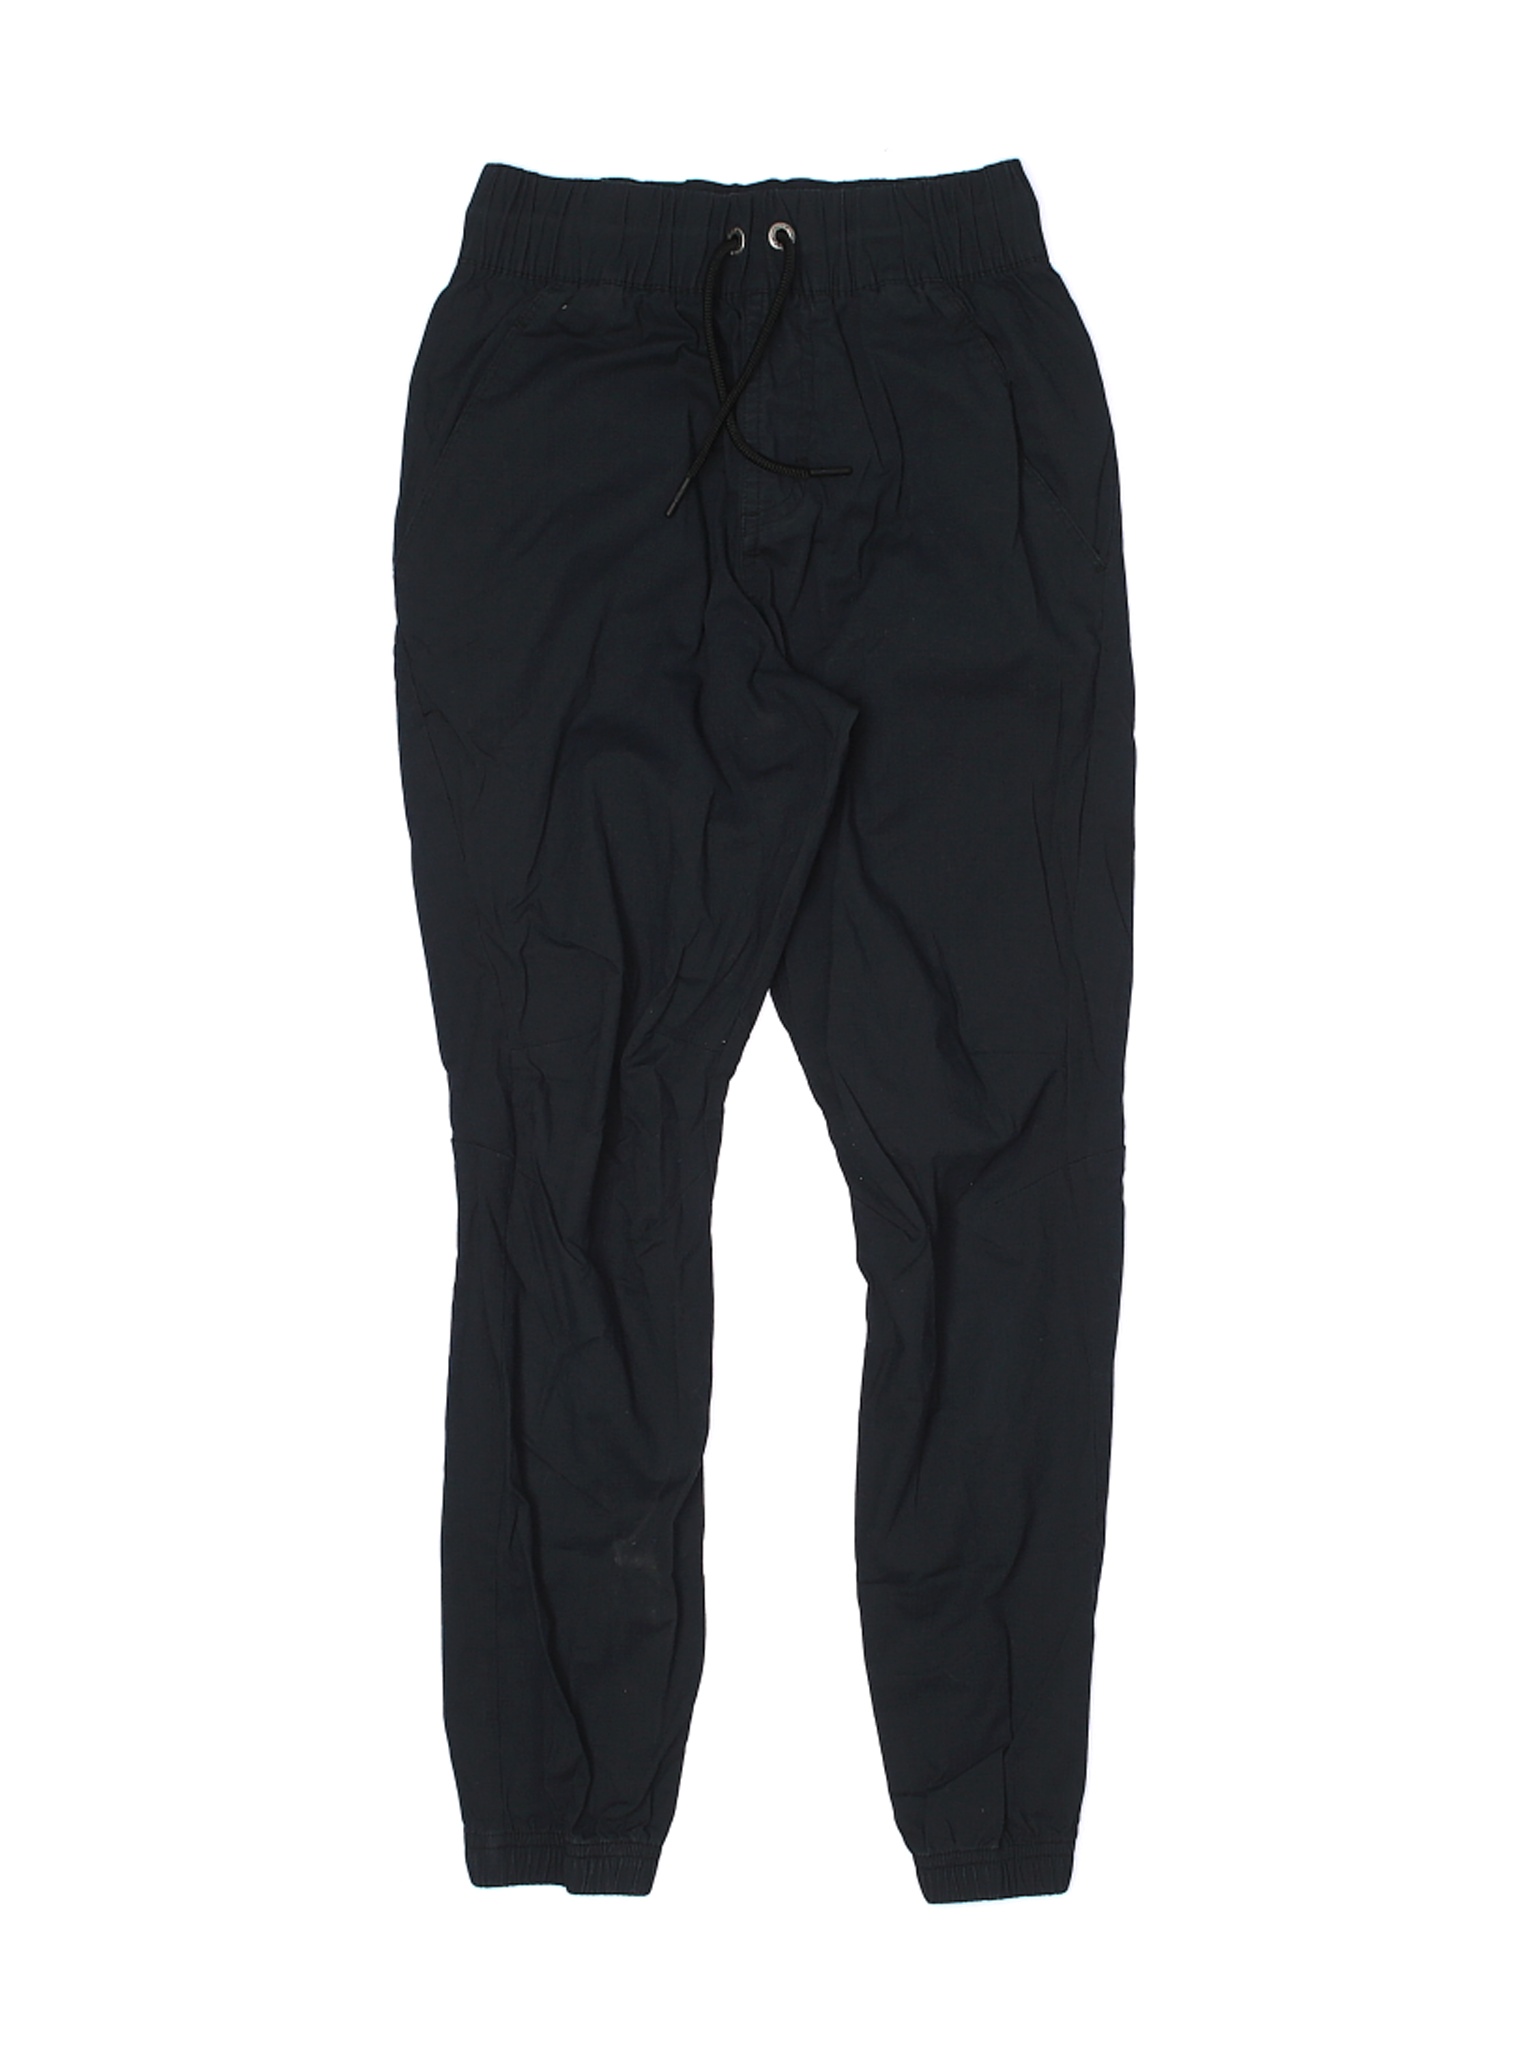 Air Jordan Boys Black Casual Pants Medium kids | eBay